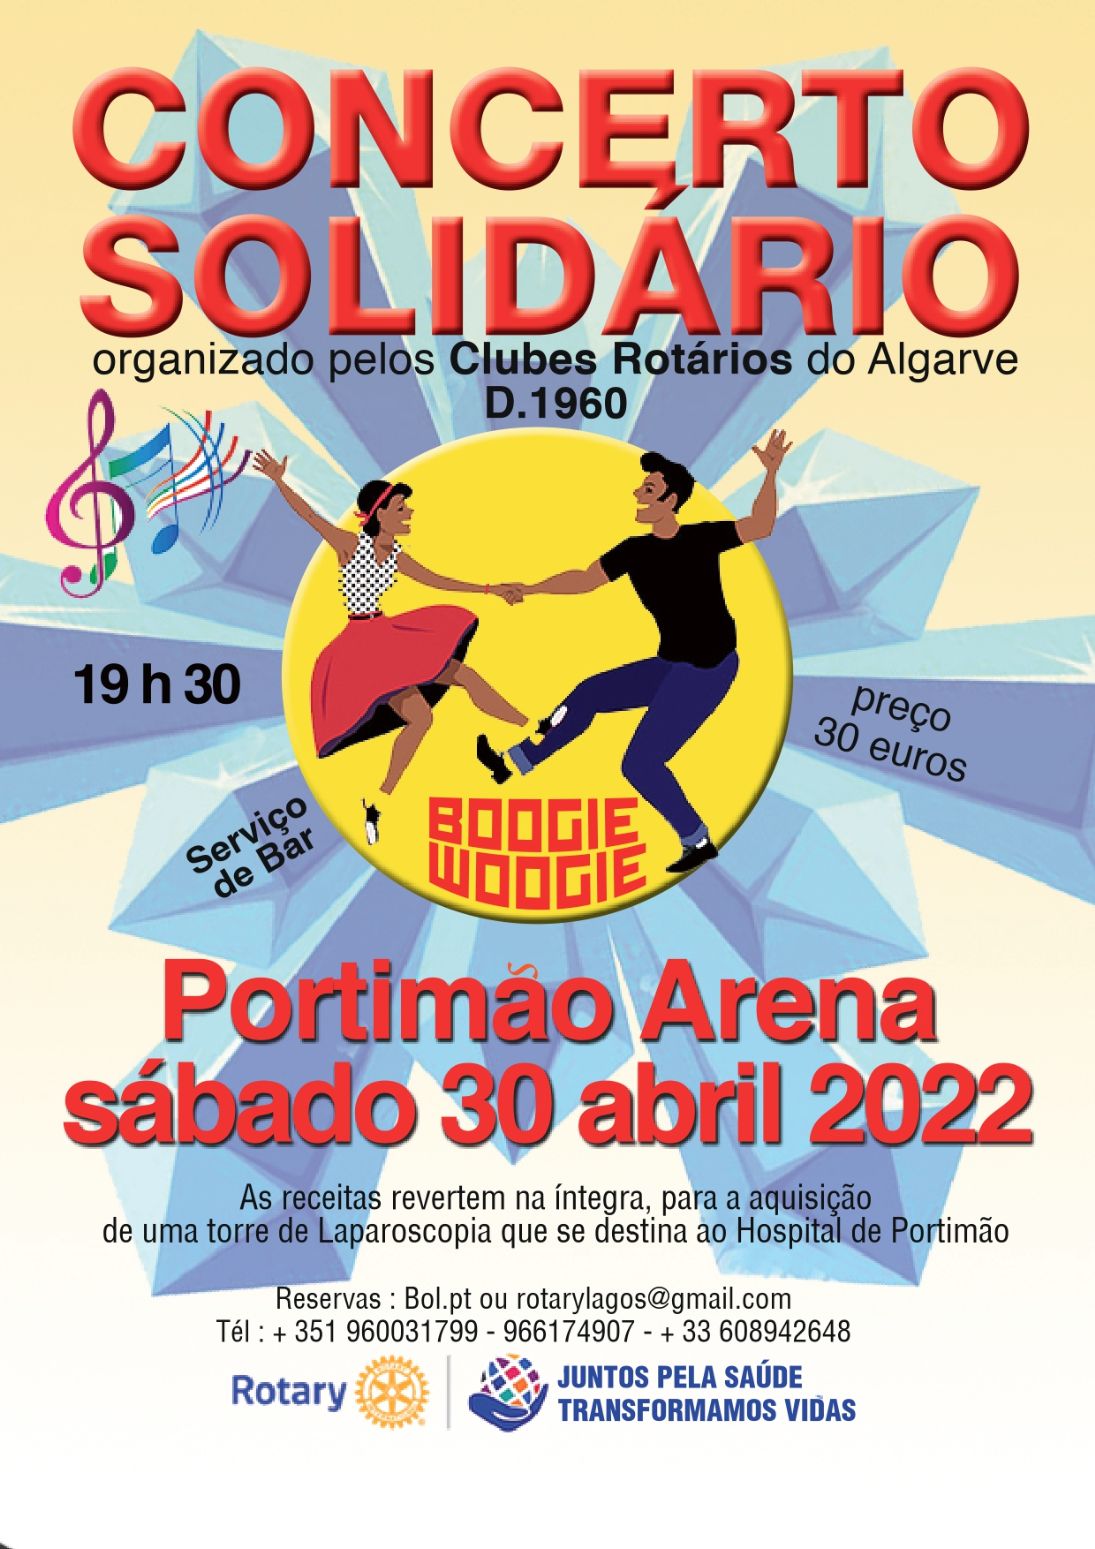 Movimento Rotário do Algarve promove Concerto Solidário para apoiar a aquisição de uma Torre de Laparoscopia para o Hospital de Portimão